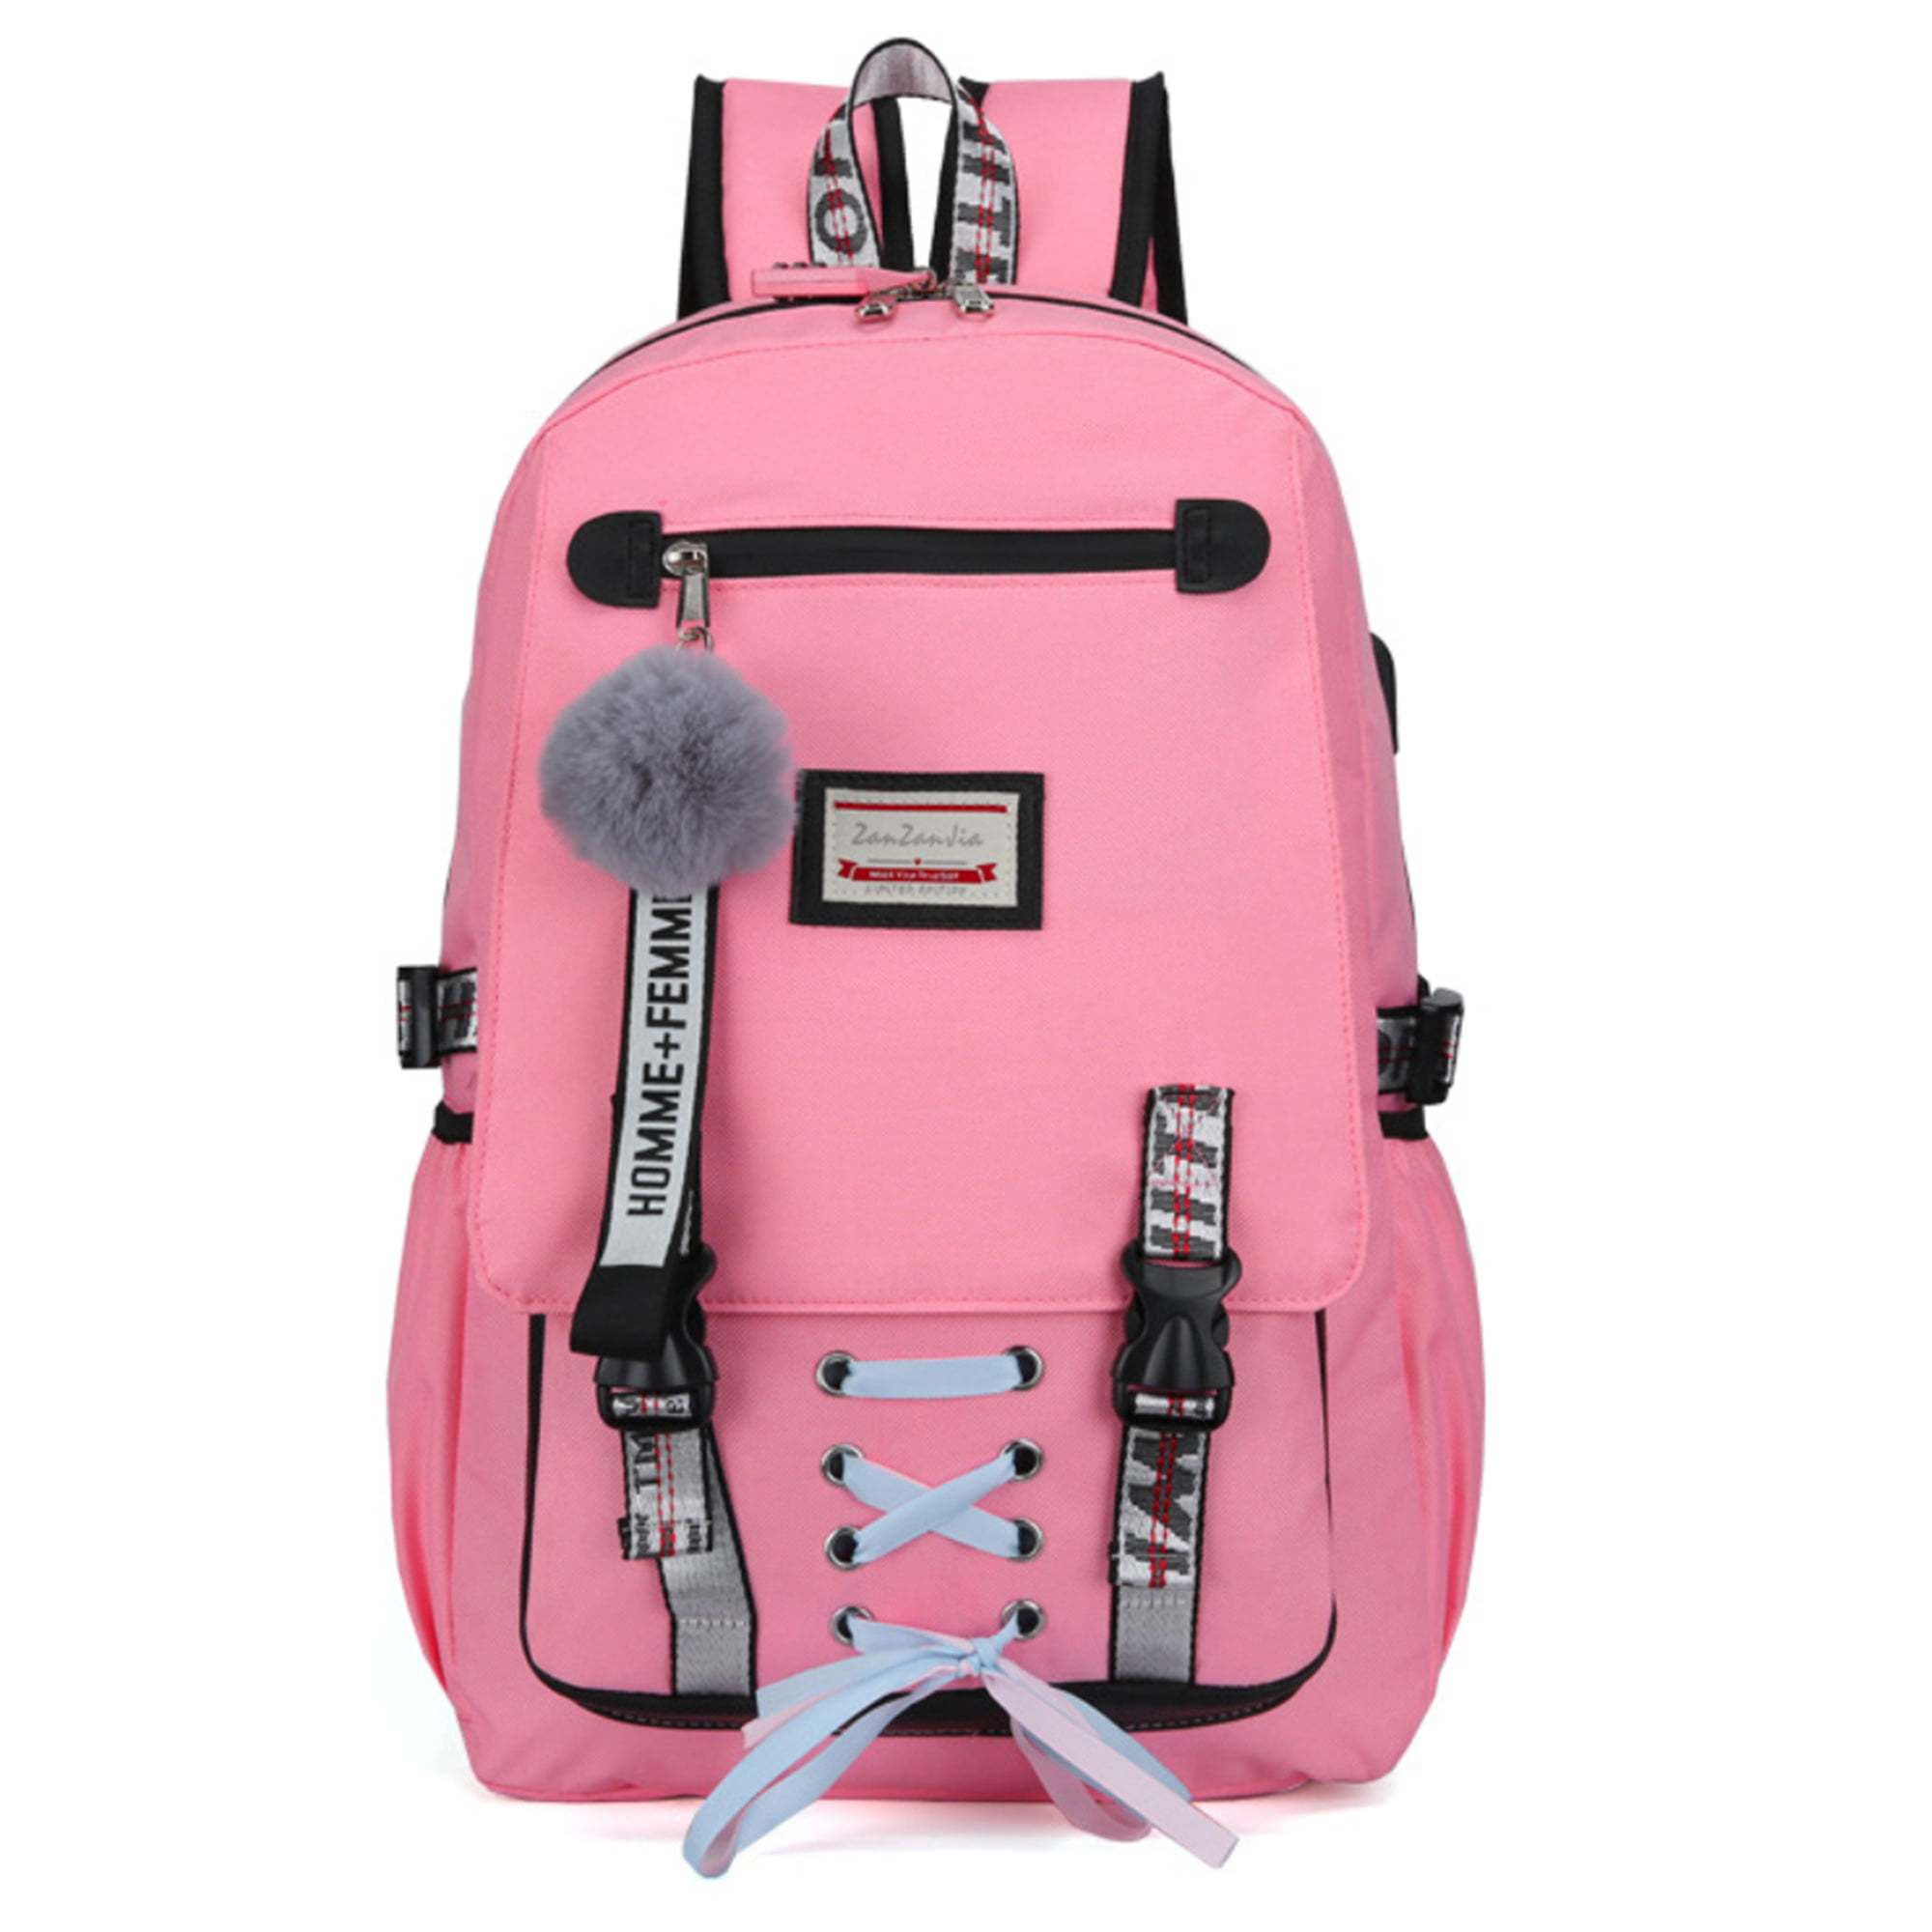 Unisex boys Girls Shoulder's Backpack School College Travel Gym Large Canvas Bag